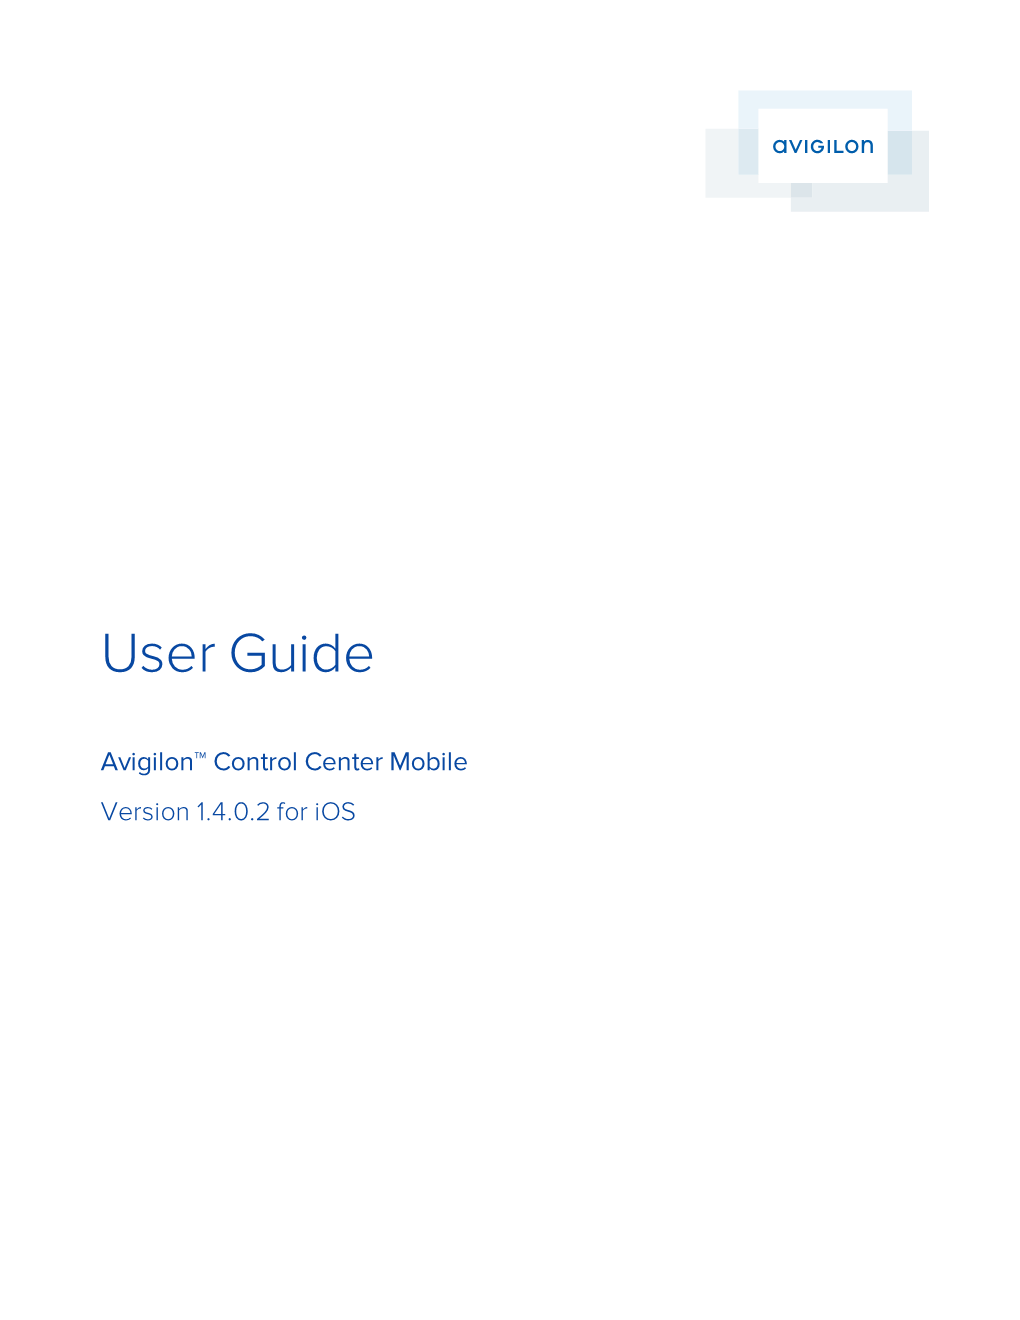 Avigilon Control Center Mobile User Guide